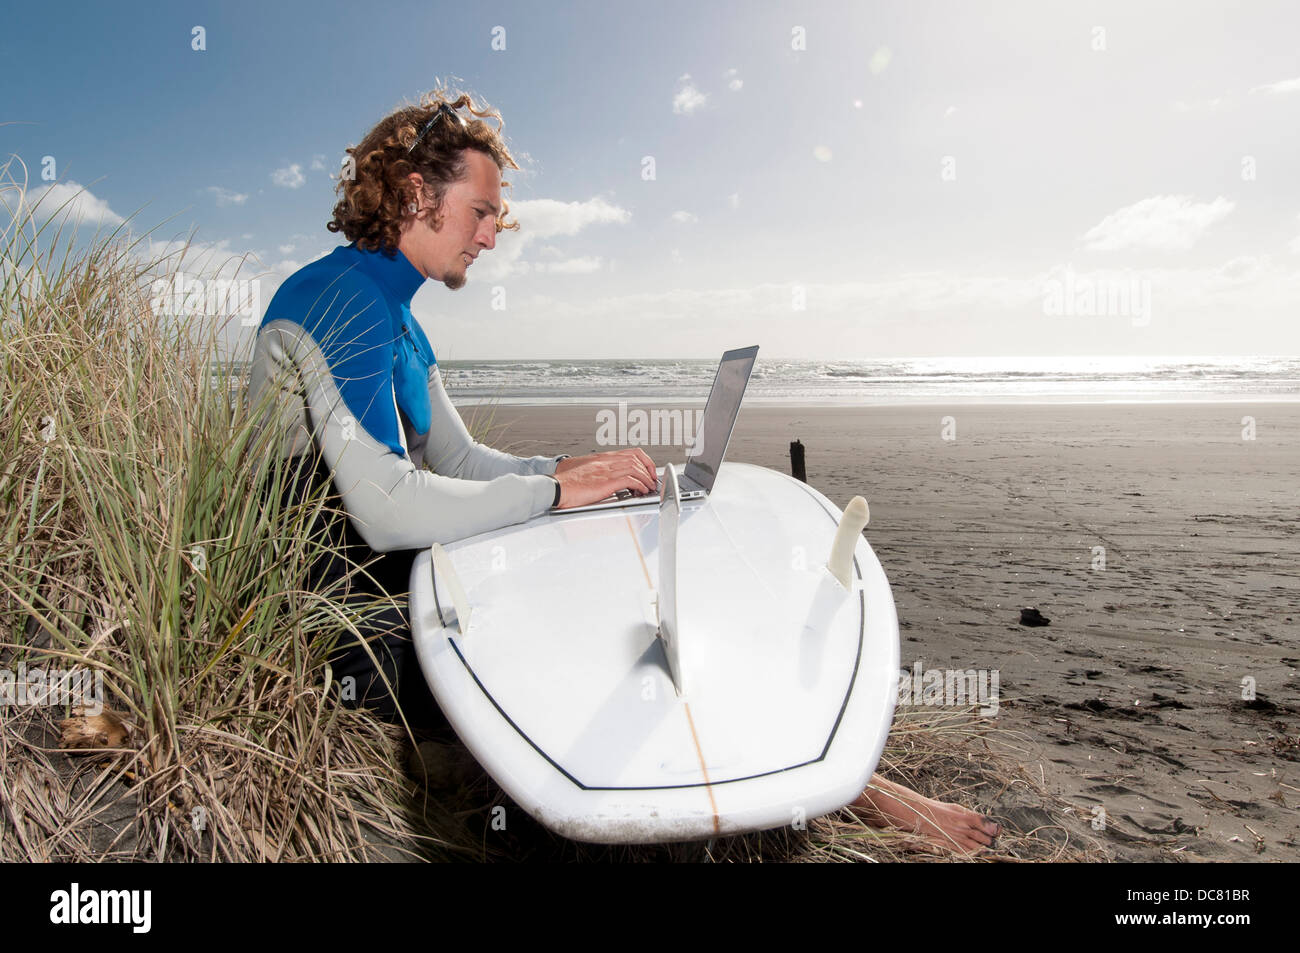 männliche Surfer sitzen am Strand mit Laptop auf Surfbrett, Ngarunui Strand, Raglan, Neuseeland Stockfoto